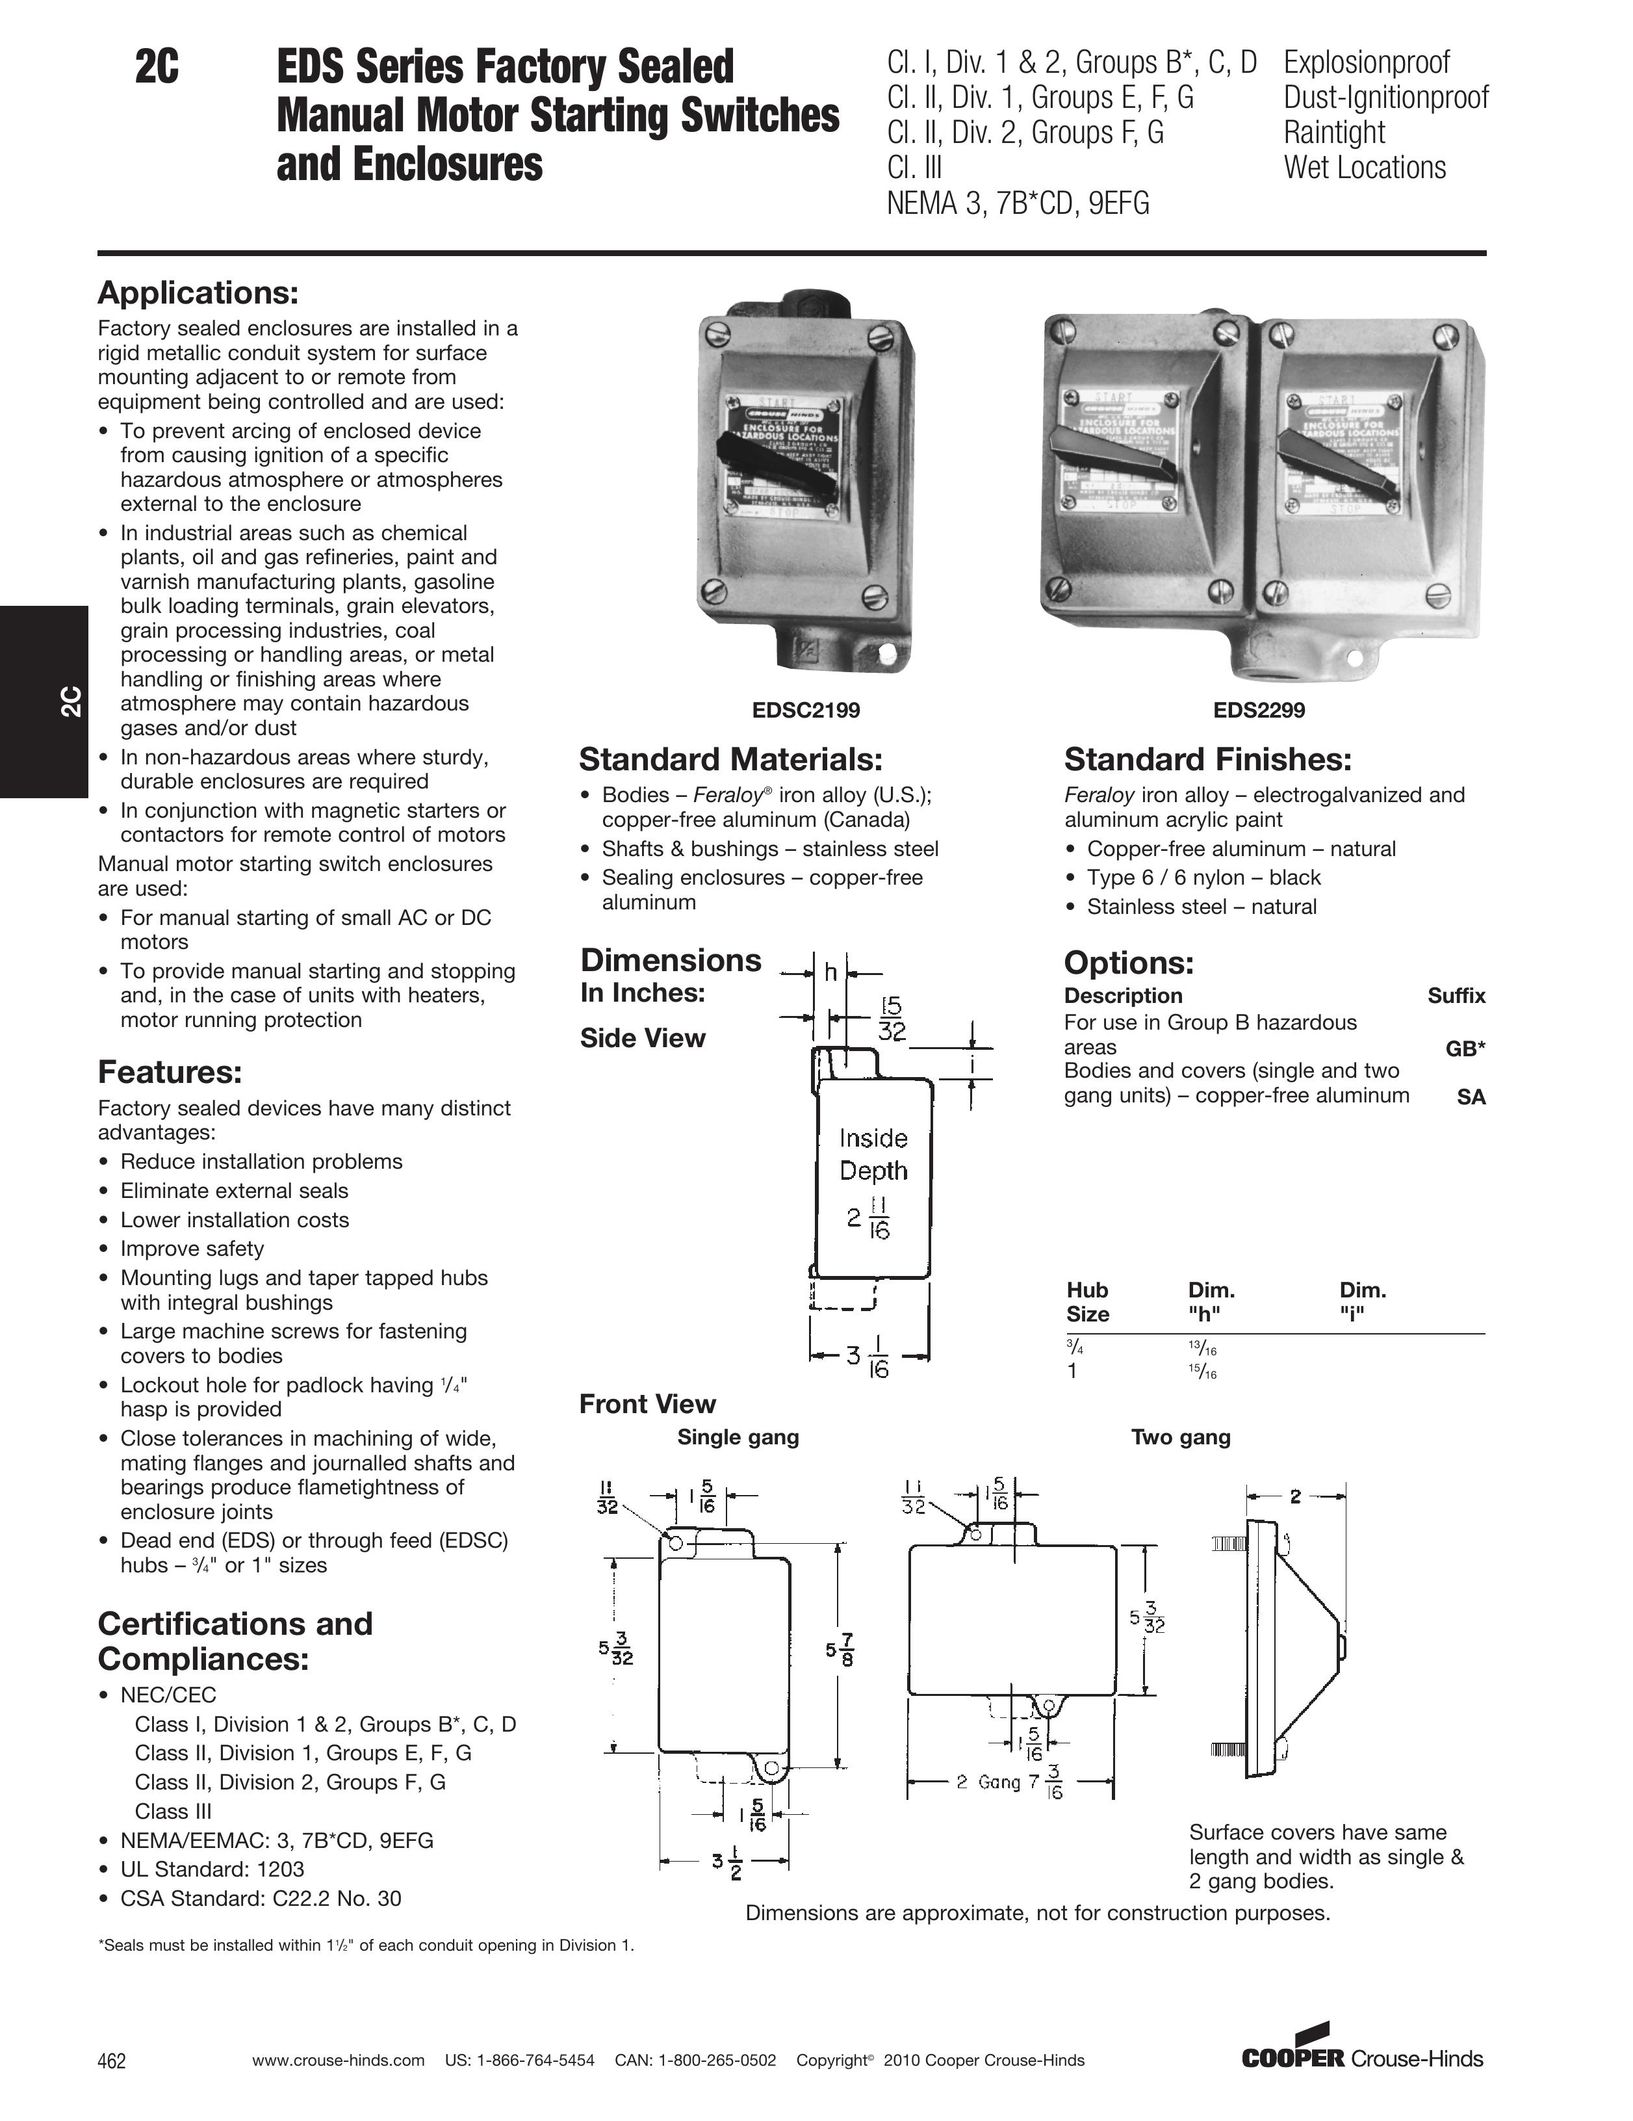 Cooper Bussmann EDSC2199 Switch User Manual